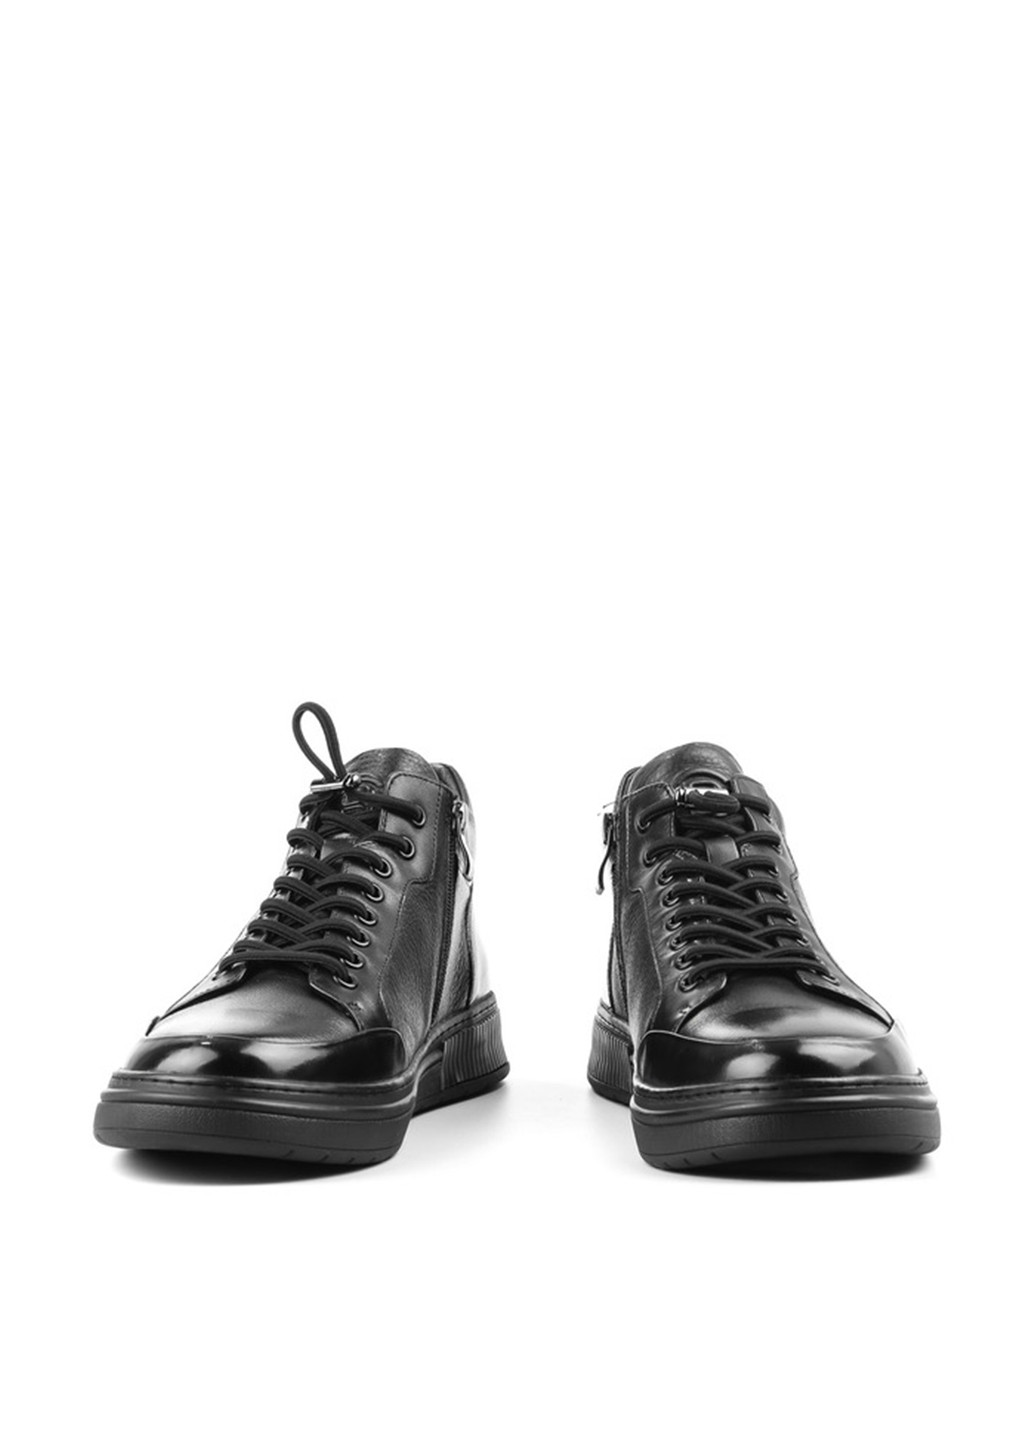 Черные осенние ботинки Le'BERDES